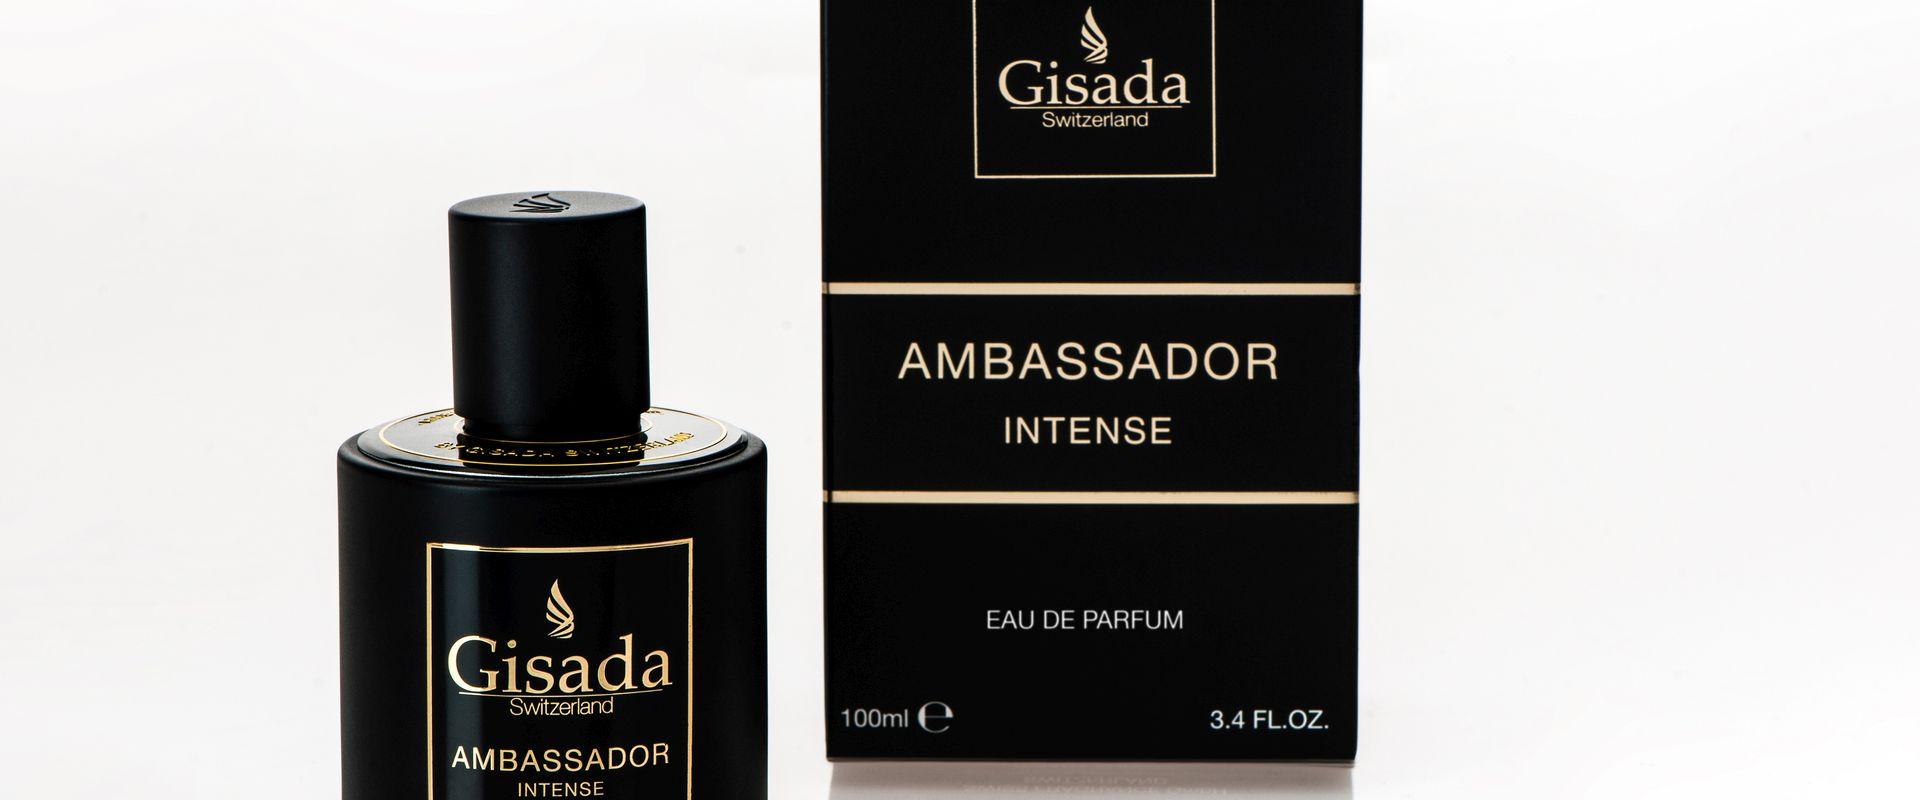 Szwajcarska marka luksusowych kosmetyków Gisada prezentuje zapach – Ambassador Intense